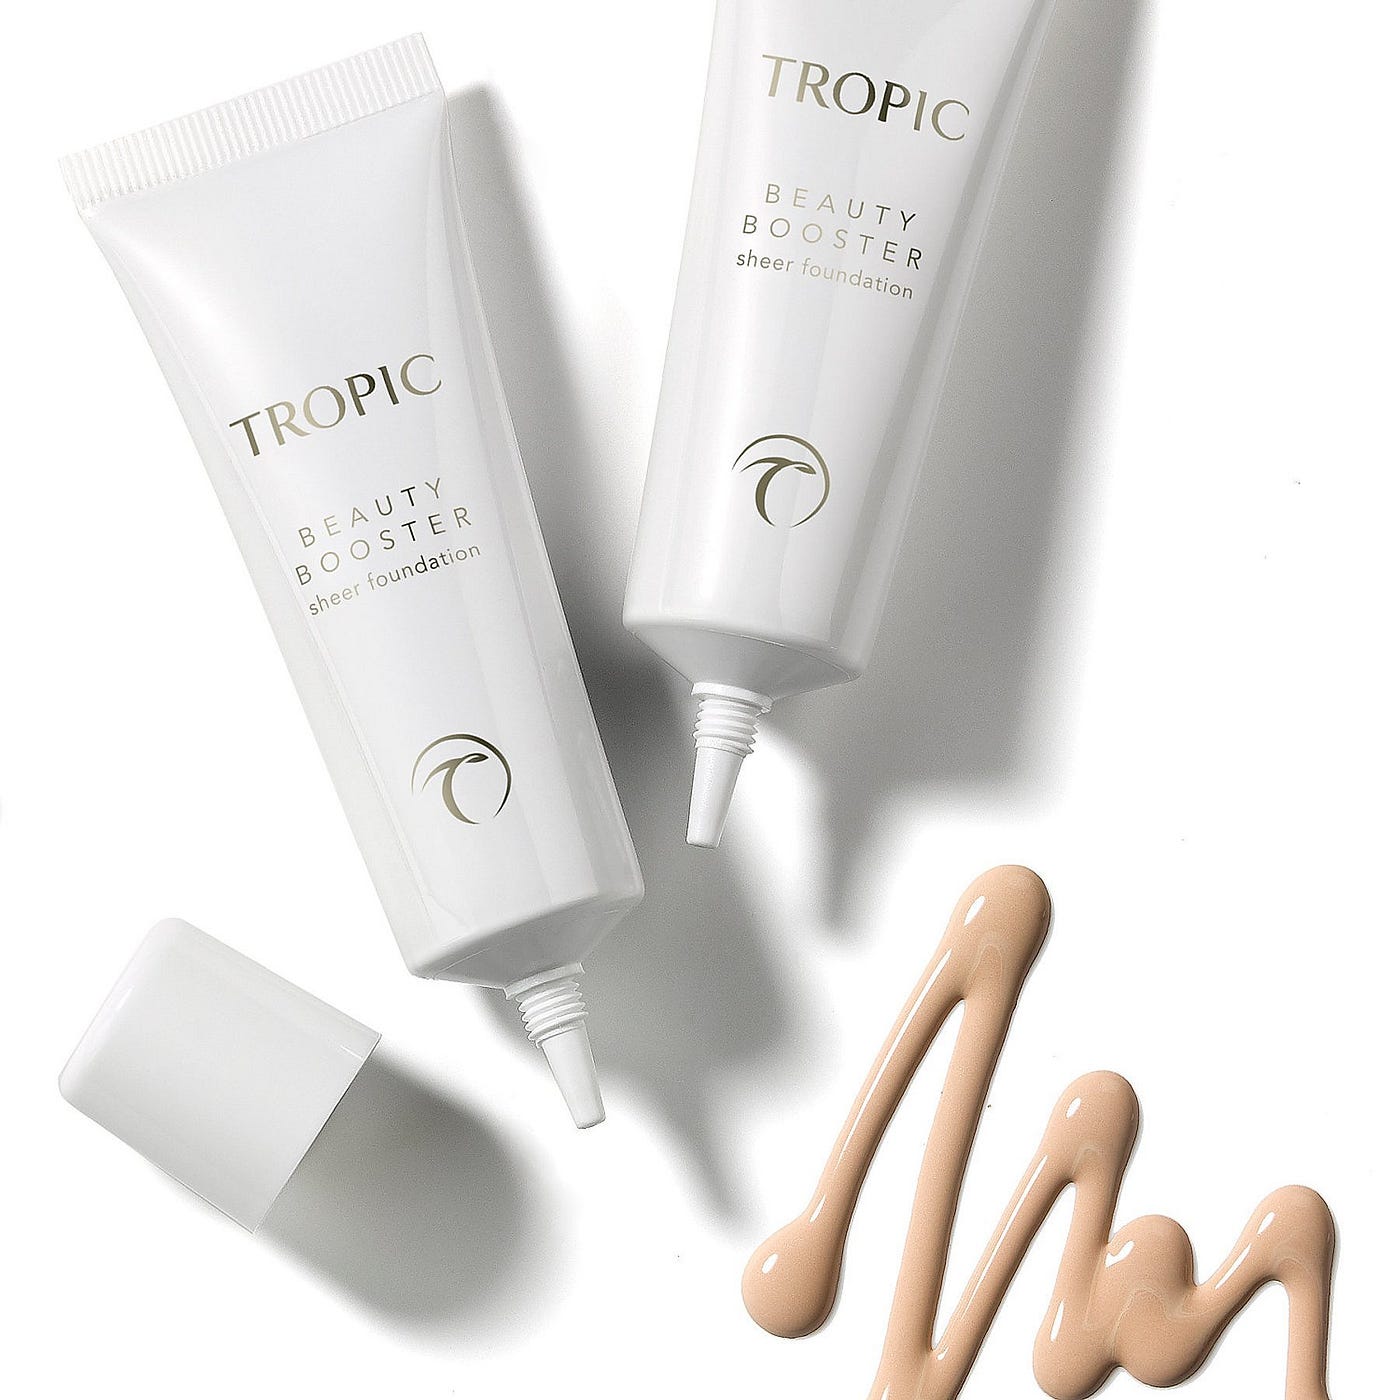 Tropic Makeup Review. What's in Tropics makeup range? | by Gin & Skin |  Medium